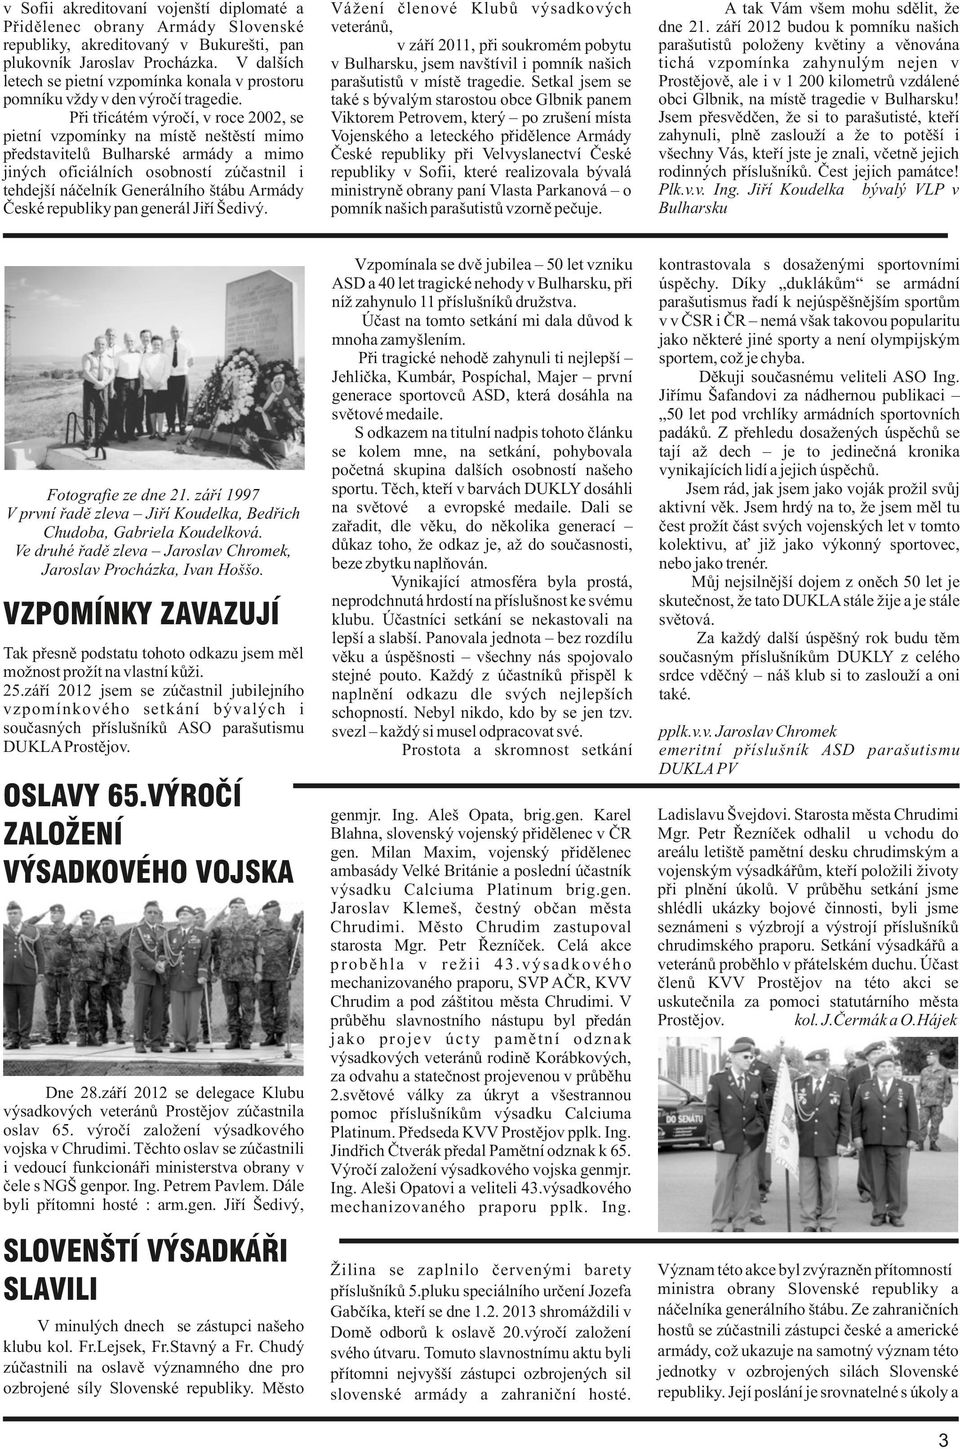 Při třicátém výročí, v roce 2002, se pietní vzpomínky na místě neštěstí mimo představitelů Bulharské armády a mimo jiných oficiálních osobností zúčastnil i tehdejší náčelník Generálního štábu Armády